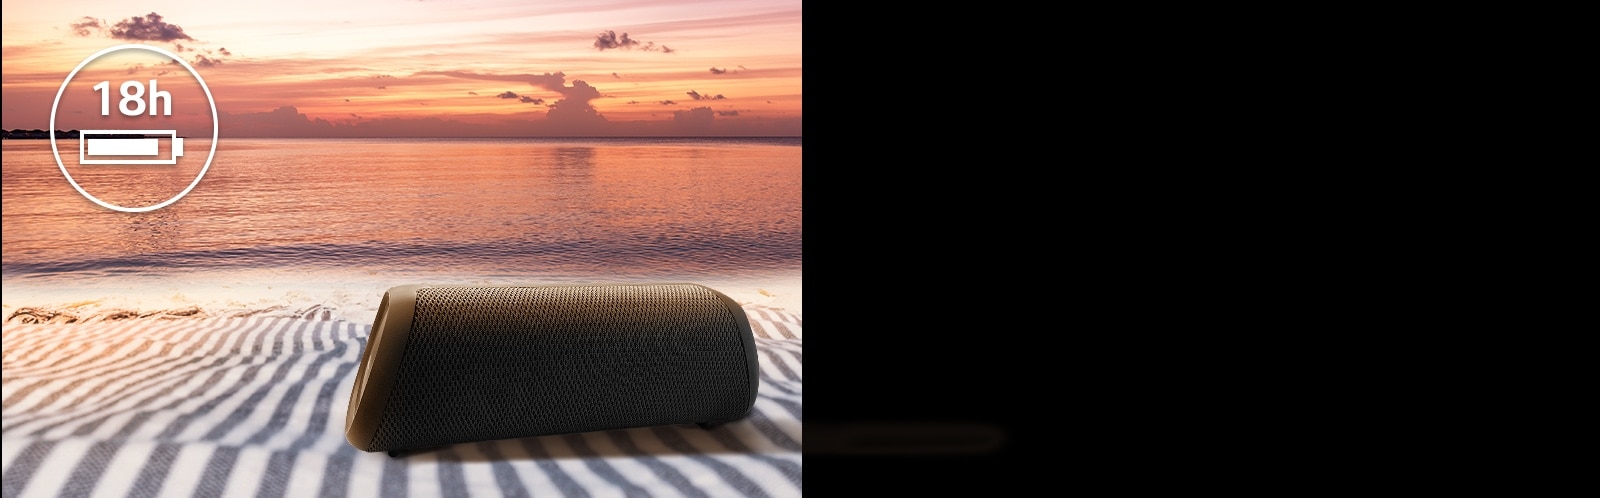 مكبر الصوت موضوع فوق منشفة الشاطئ. يظهر أمام مكبر الصوت منظر الغروب على الشاطئ لتوضيح أن بطارية هذا المنتج تدوم حتى 18 ساعة.